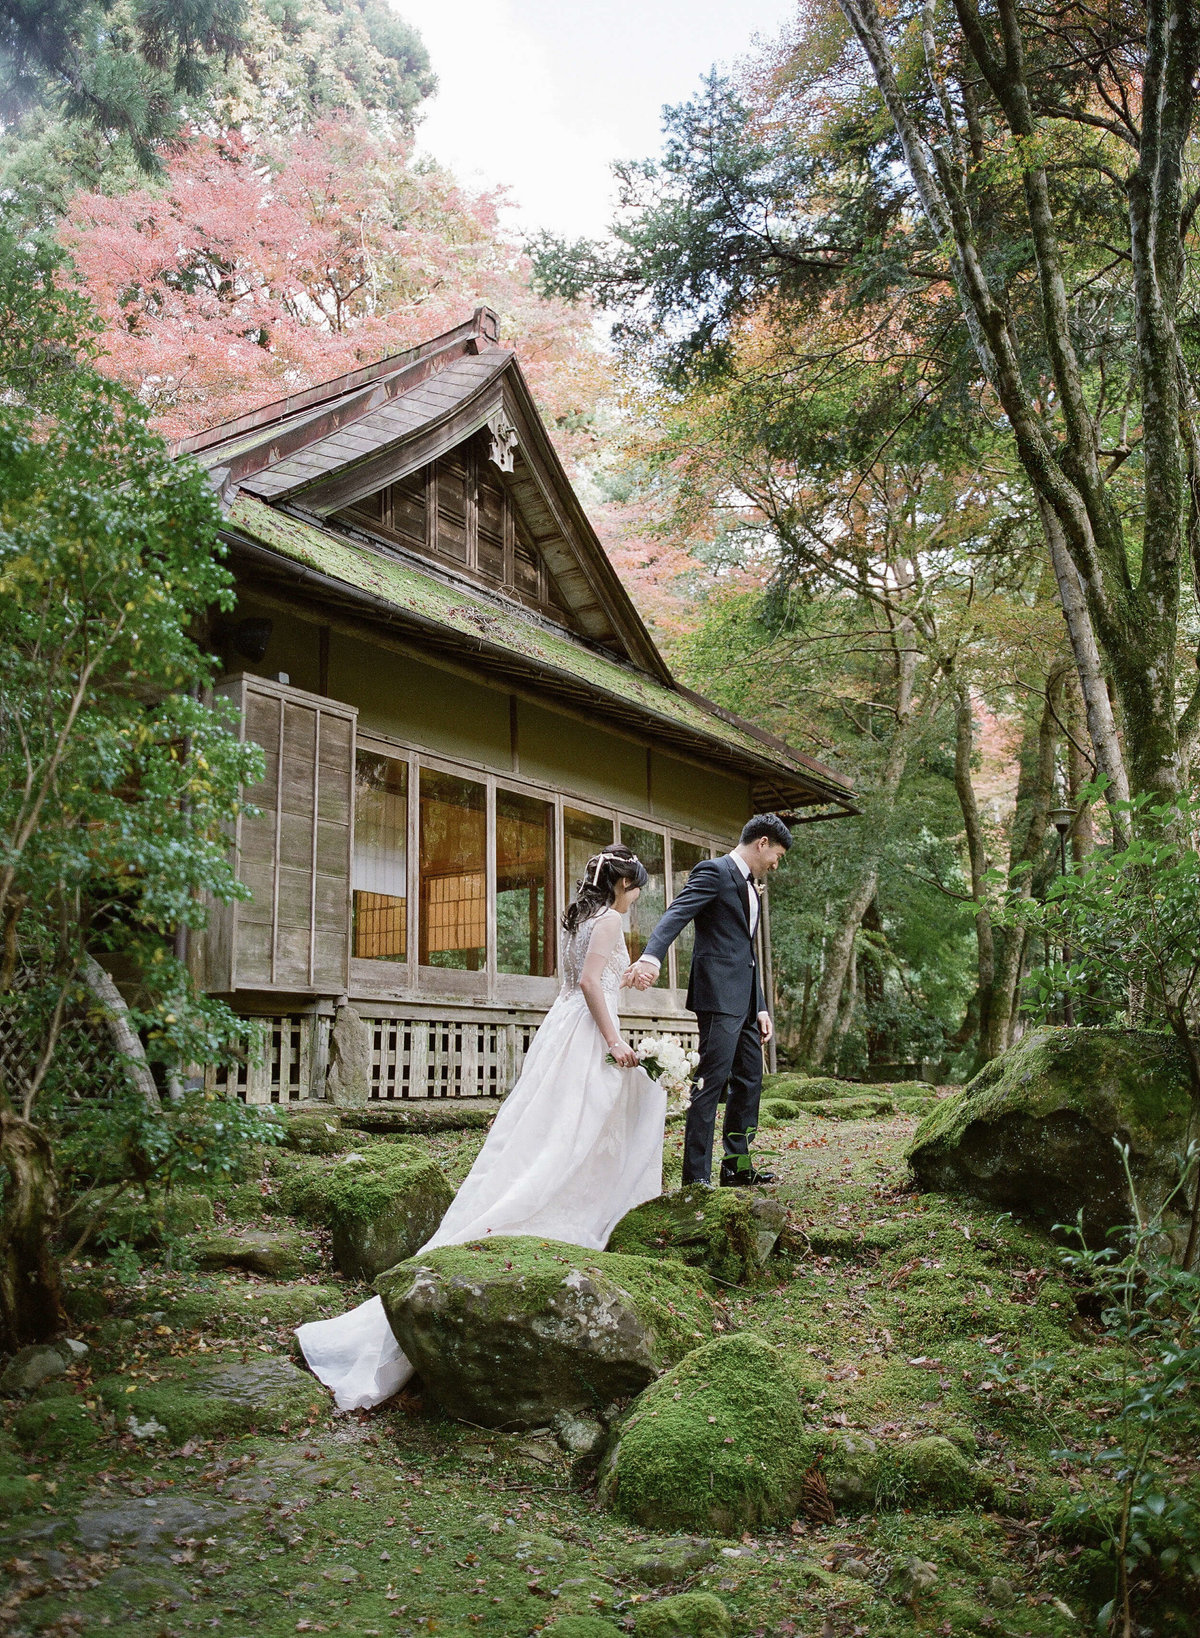 14-KTMerry-weddings-bride-groom- japan